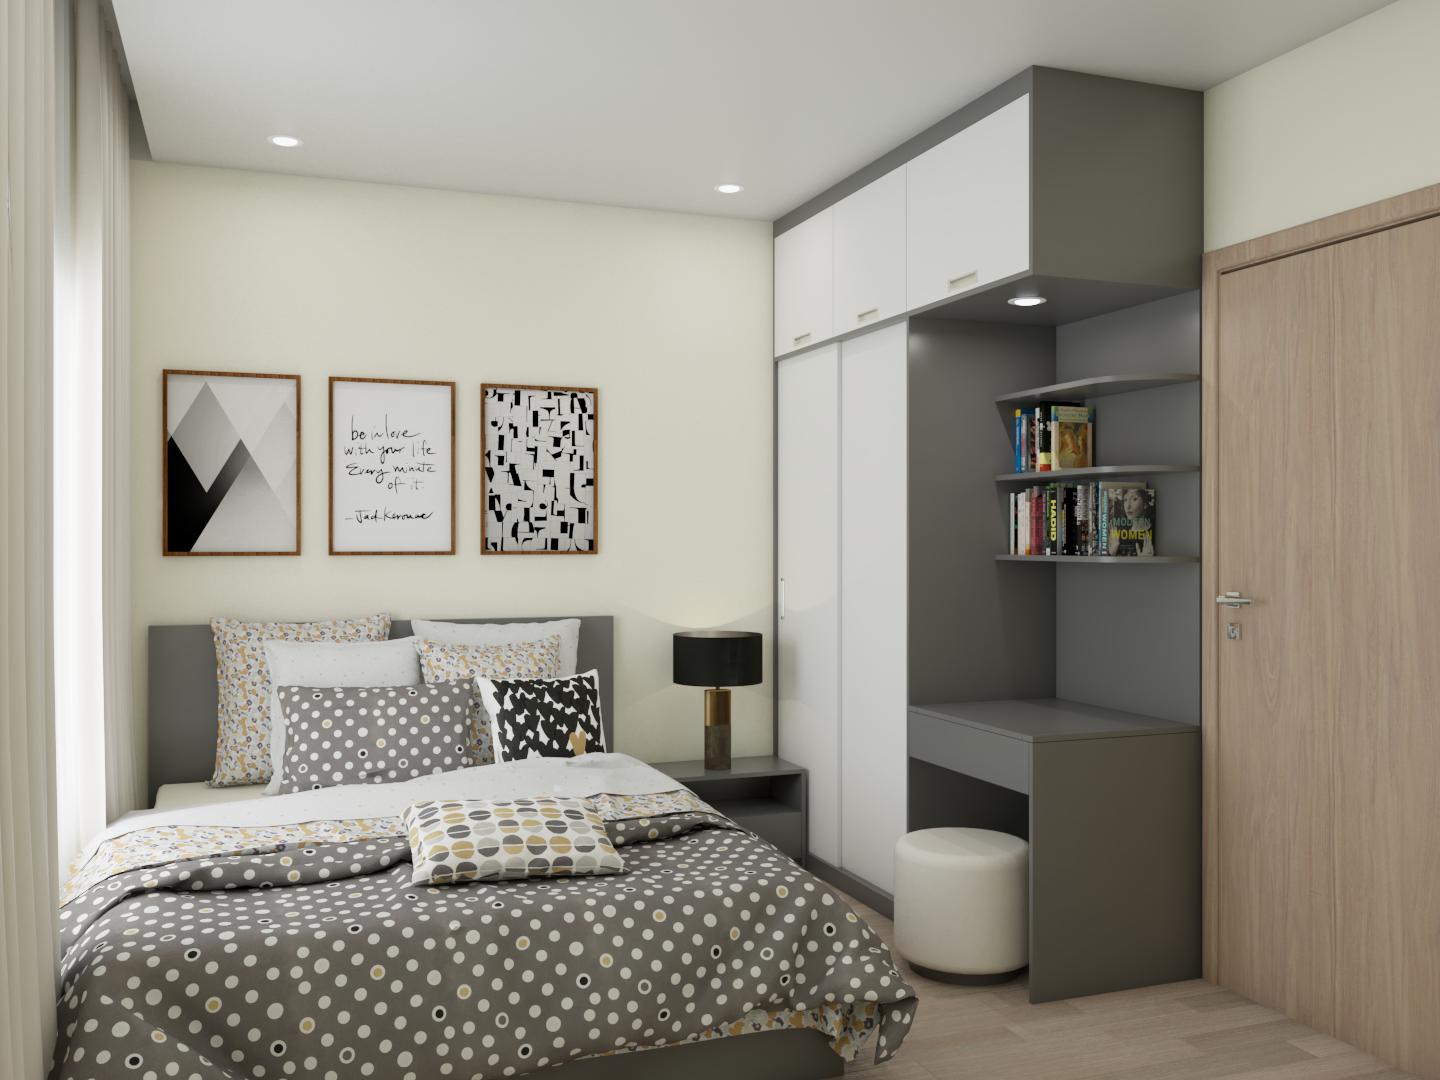 Với thiết kế hiện đại và màu sắc tươi trẻ, phòng ngủ trẻ trung của chúng tôi sẽ mang lại cho bạn cảm giác thoải mái và vui vẻ. Hãy tận hưởng những giấc ngủ ngon trên giường êm ái và đảm bảo sức khỏe tốt hơn.